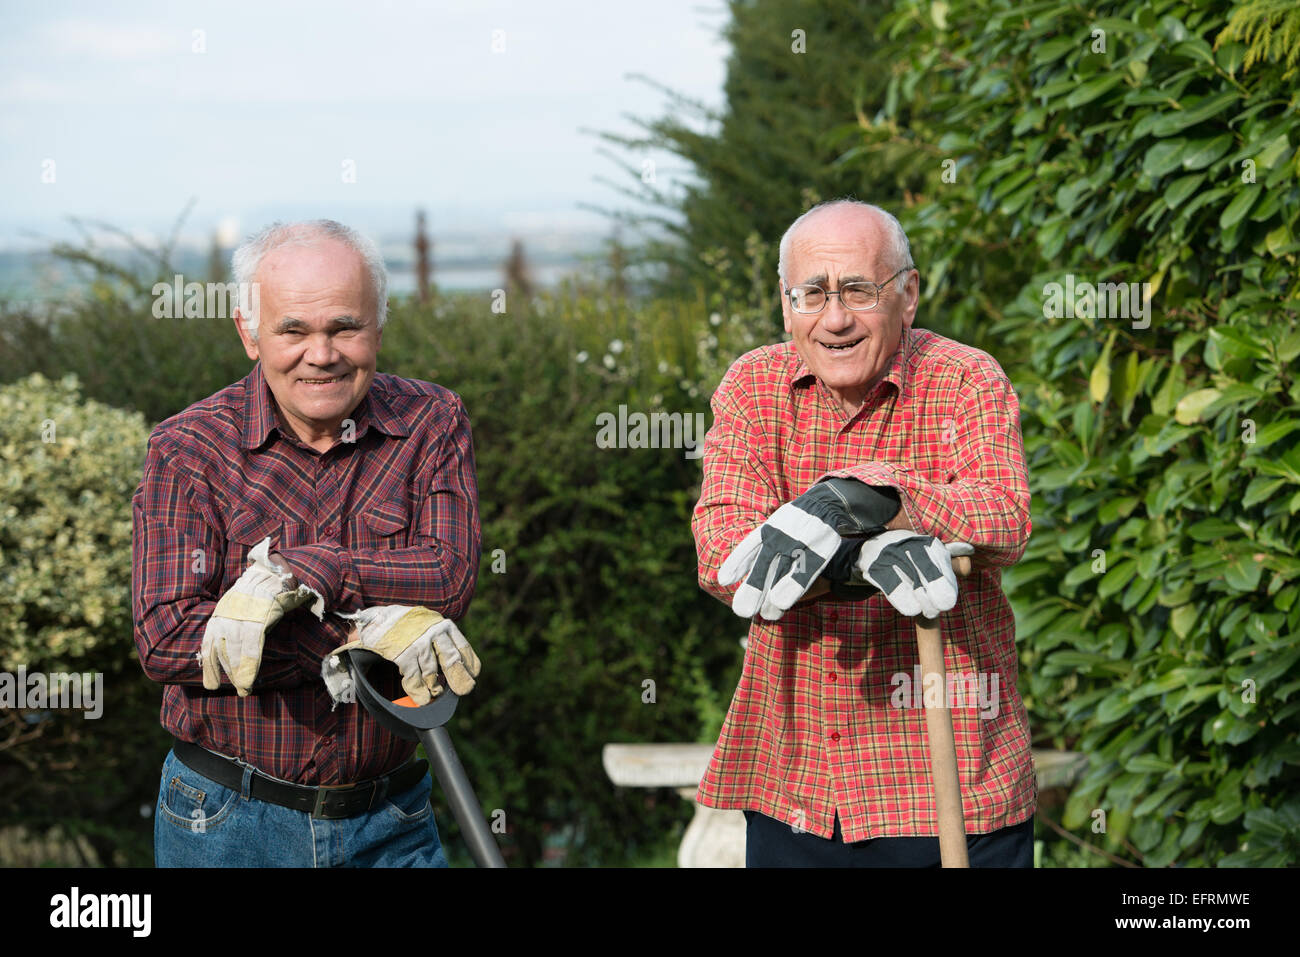 Deux hauts jardinier spades standing in garden Banque D'Images